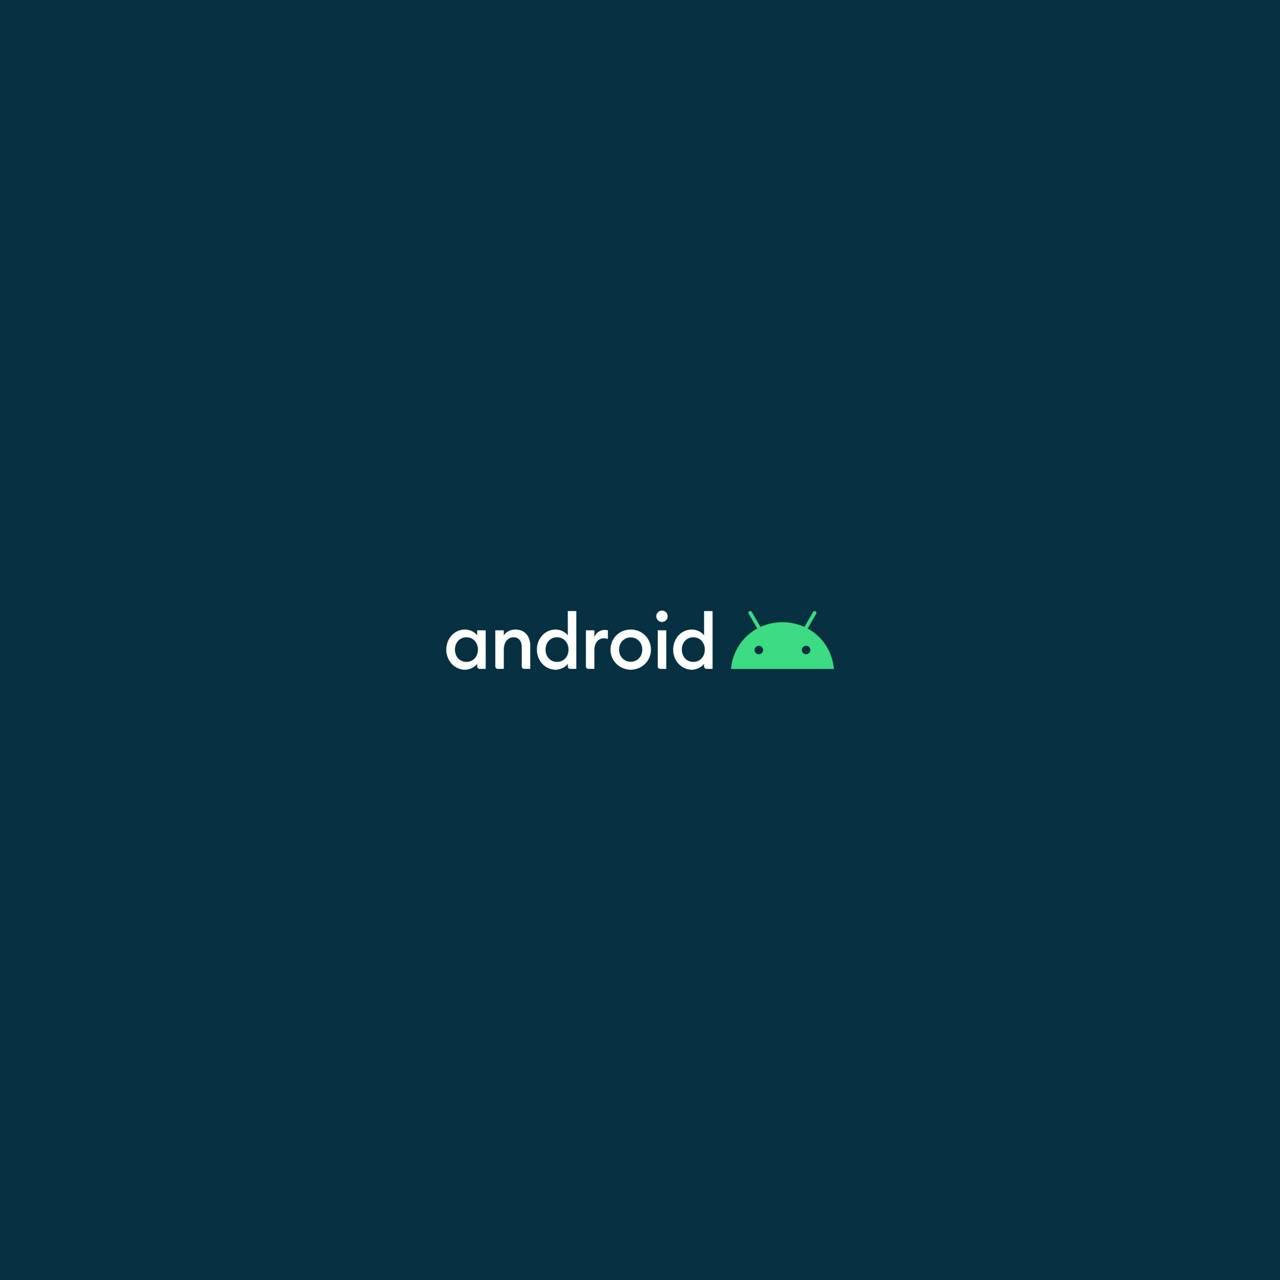 Sætter standarderne for android udviklere. Wallpaper